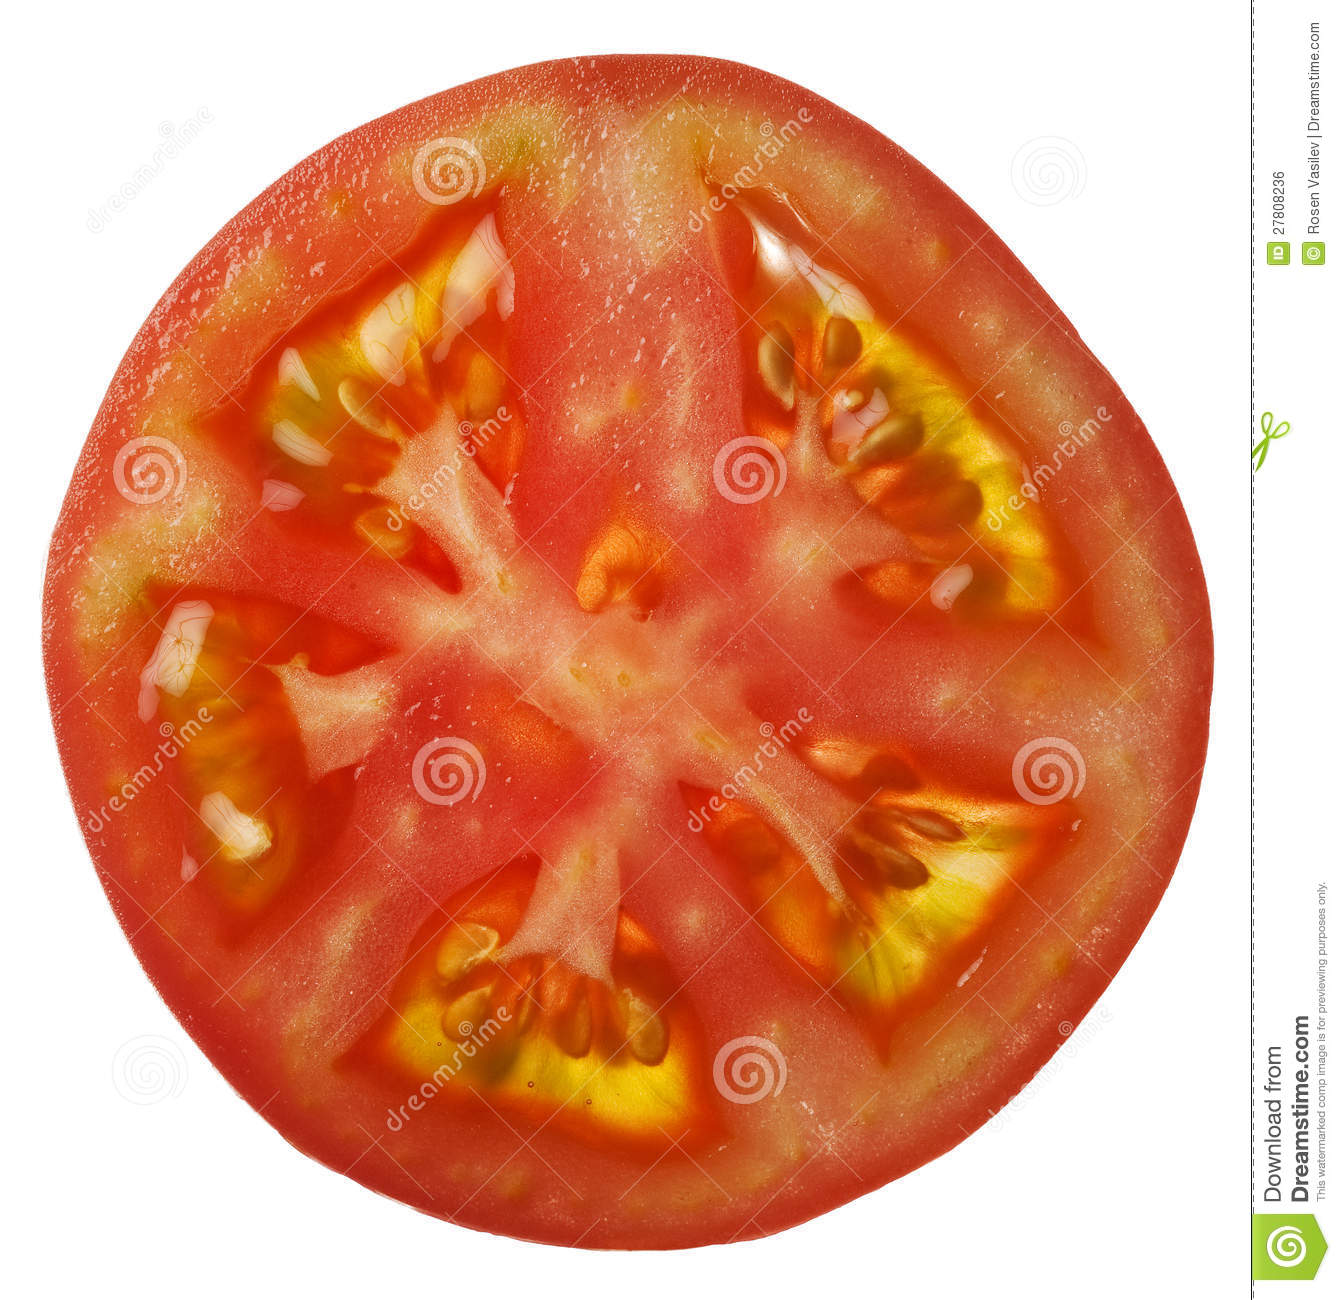 Slice Tomato Royalty Free Stock Image   Image  27808236